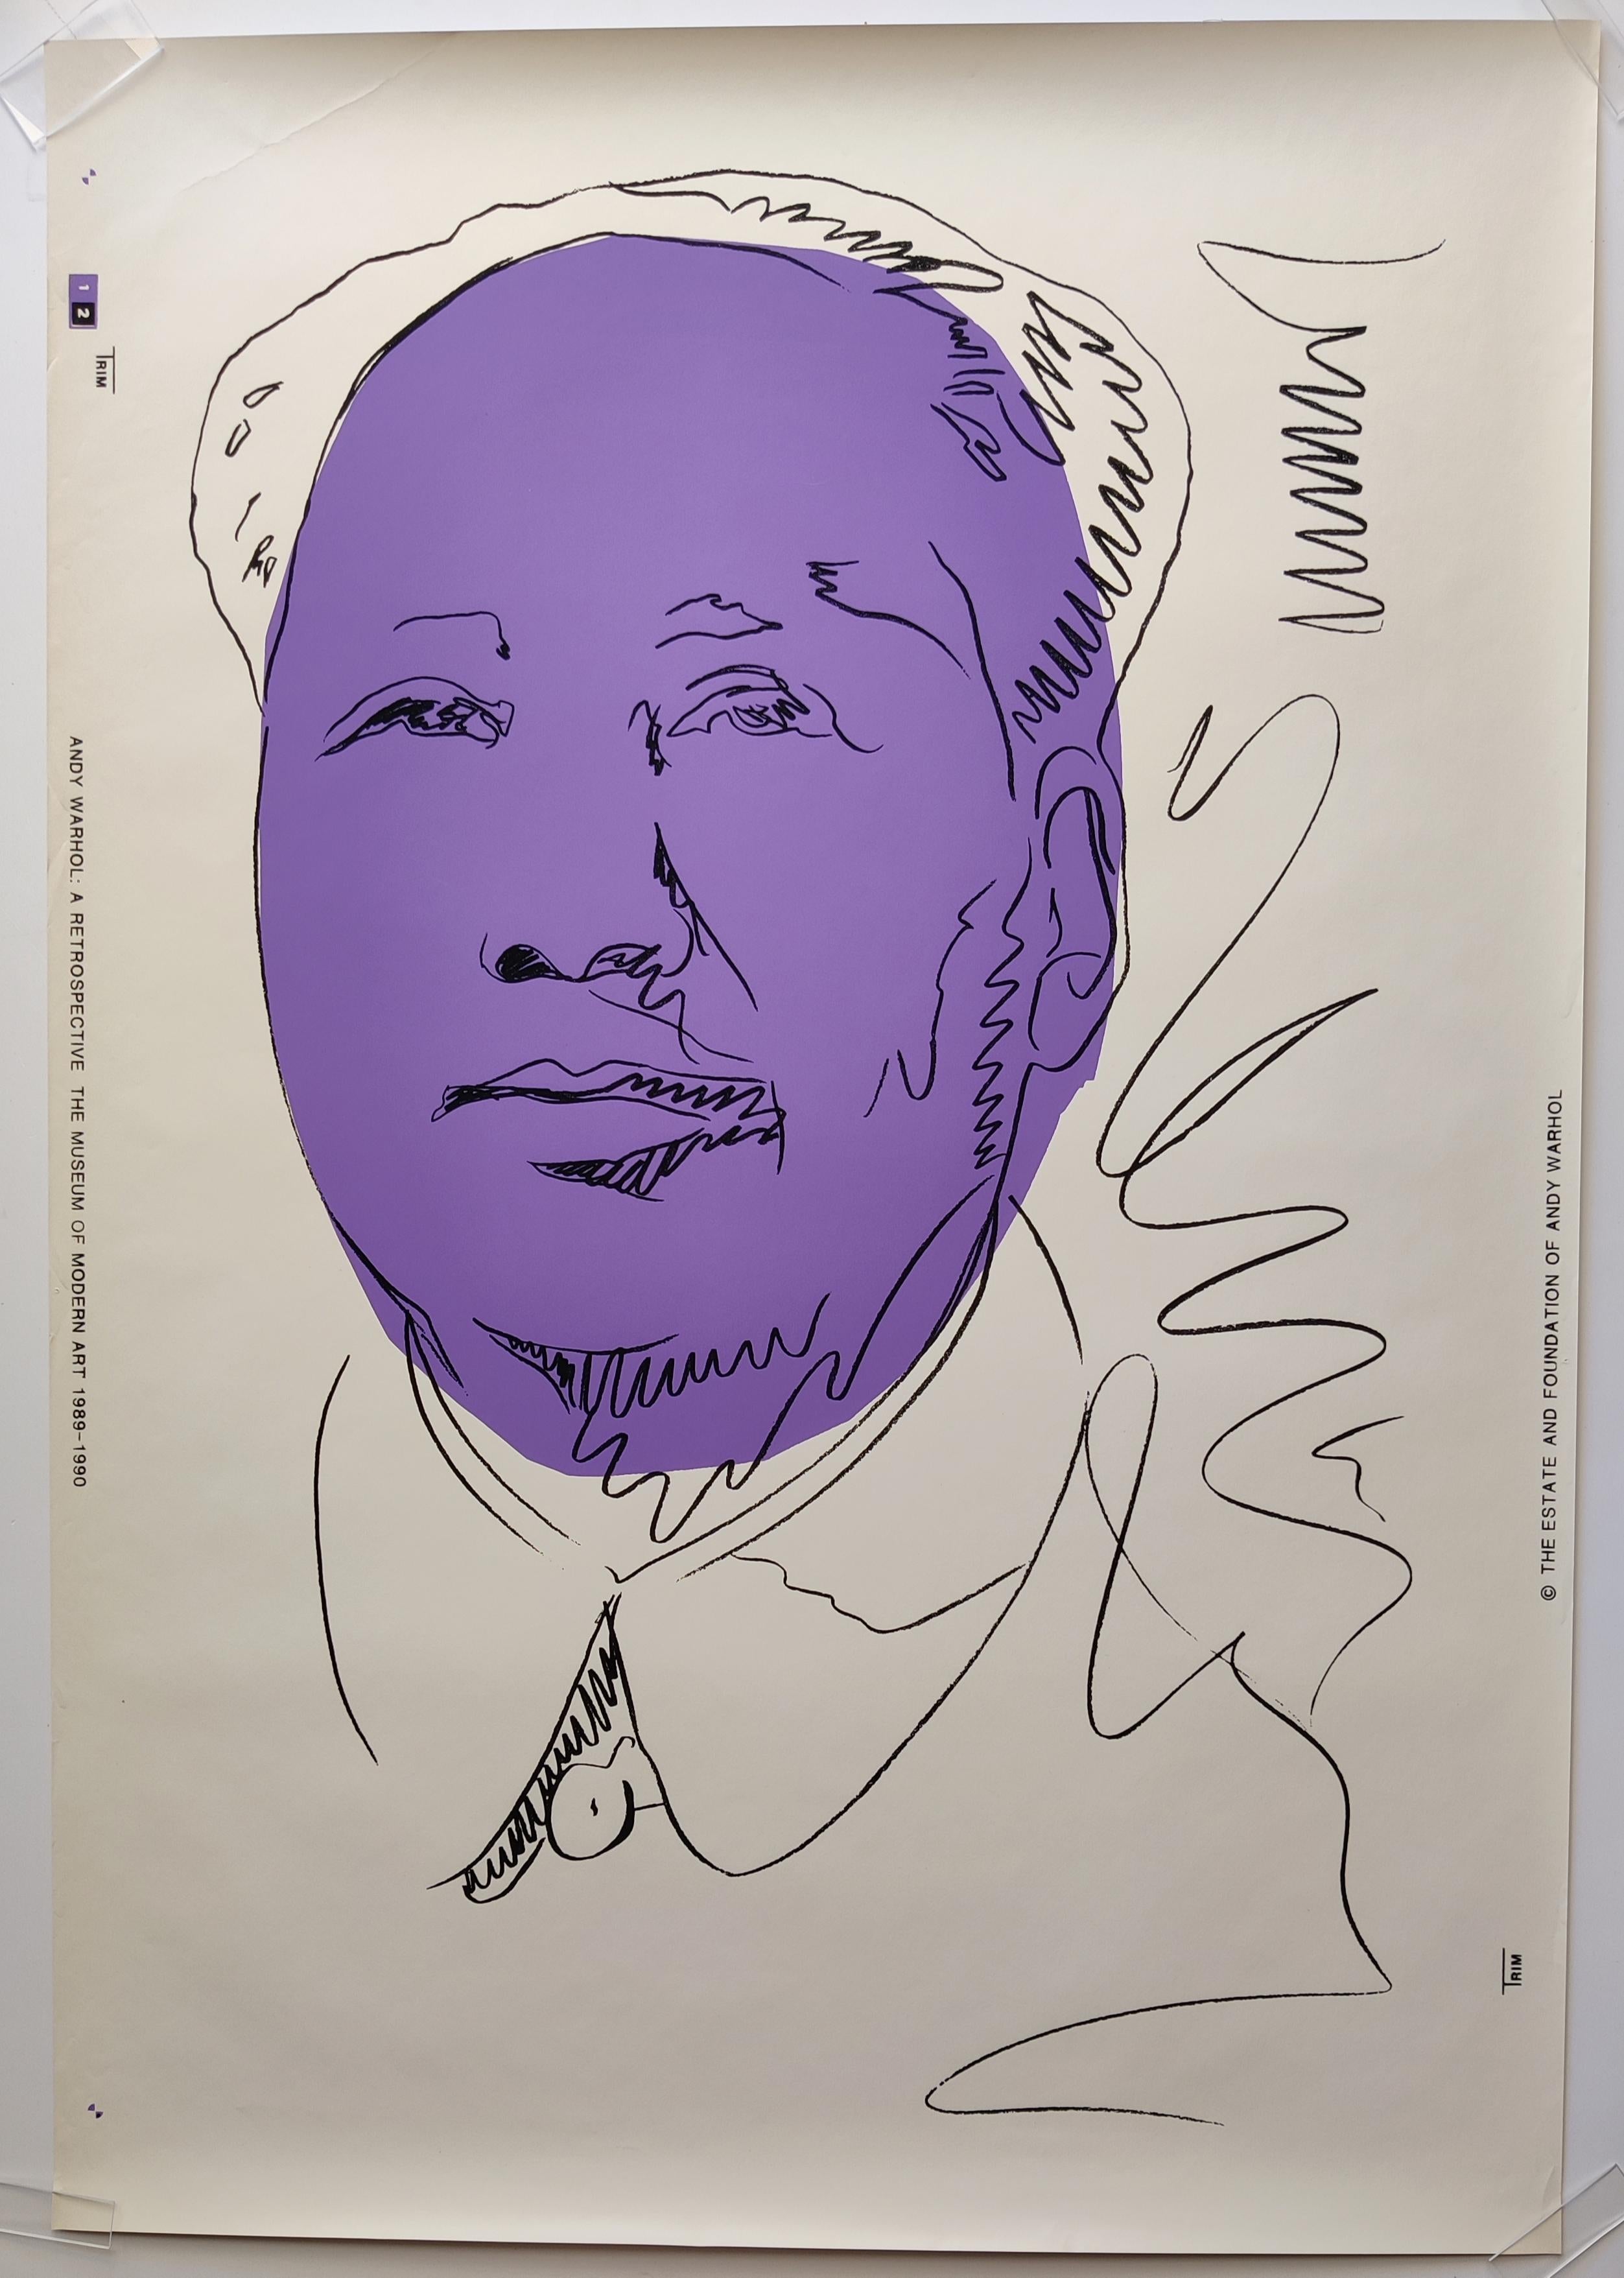 Andy Warhol
Mao (Tapete). 1974 (gedruckt 1989)
Farbsiebdruck auf Tapete
Blattgröße: 108 x 75 cm, vollrandig. 
Herausgegeben vom Museum of Modern Art, New York, in Verbindung mit "Andy Warhol: Eine Retrospektive", 6. Februar bis 2. Mai 1989
Ein sehr